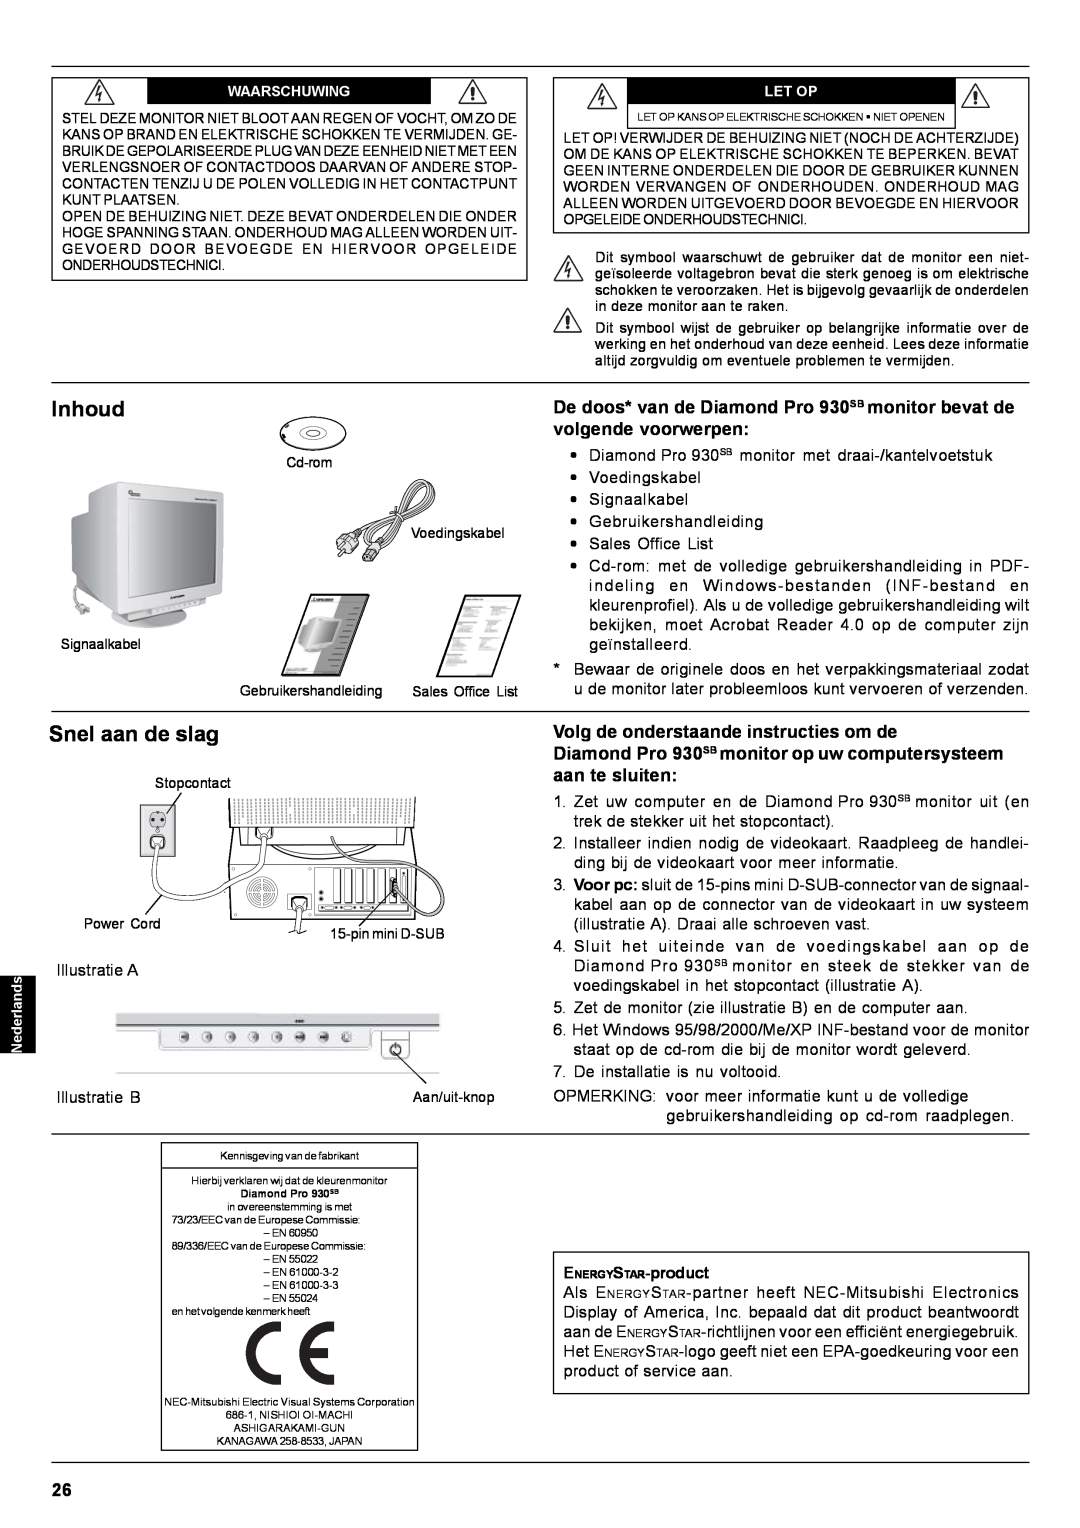 Mitsubishi Electronics Pro 930SB Inhoud, Snel aan de slag, Volg de onderstaande instructies om de, aan te sluiten 